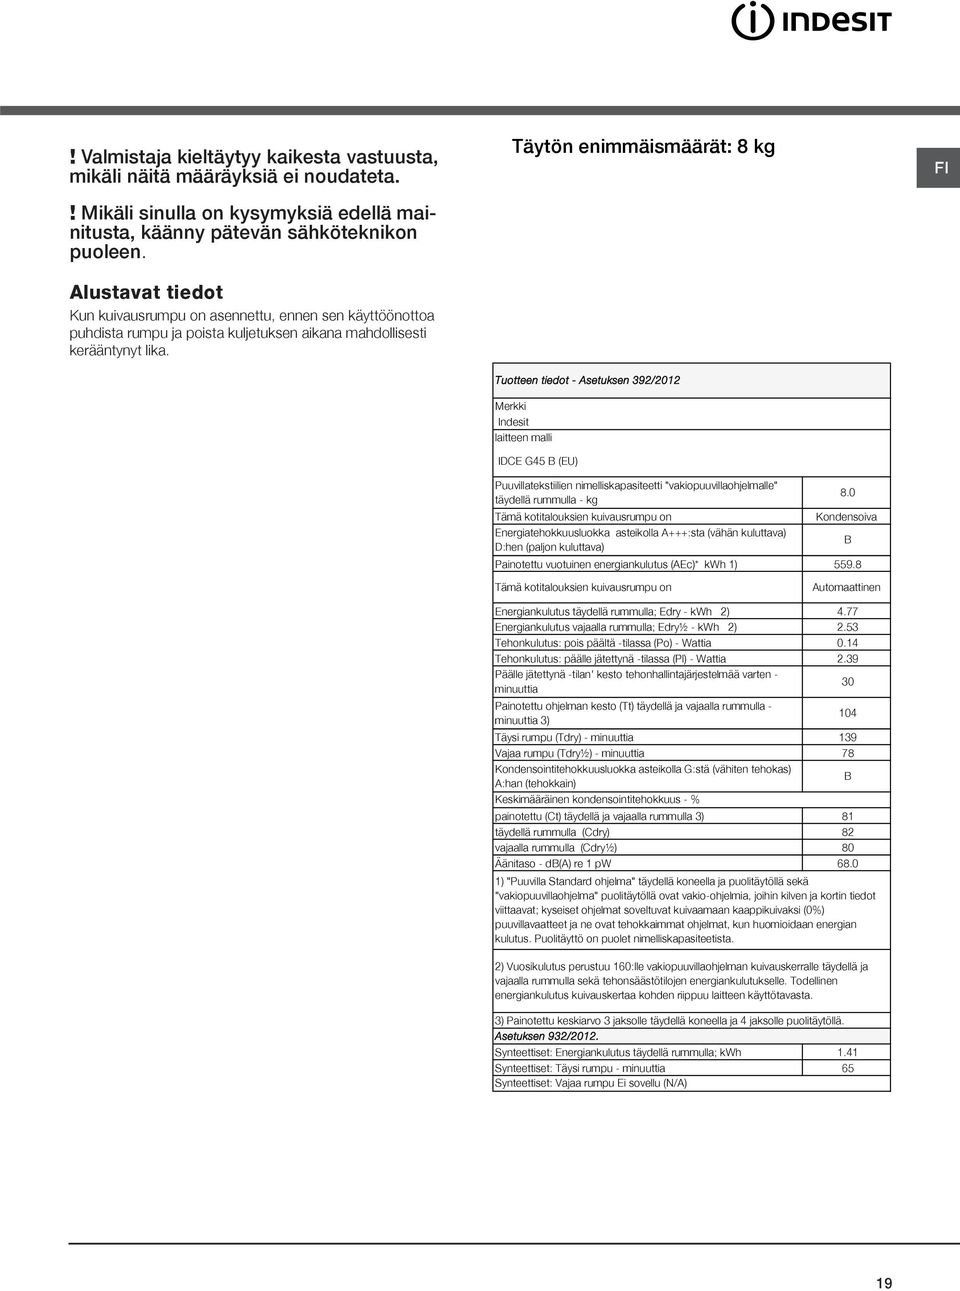 Täytön enimmäismäärät: 8 kg Tuotteen tiedot - Asetuksen 392/2012 Merkki Indesit laitteen malli IDCE G45 B (EU) Puuvillatekstiilien nimelliskapasiteetti "vakiopuuvillaohjelmalle" täydellä rummulla -